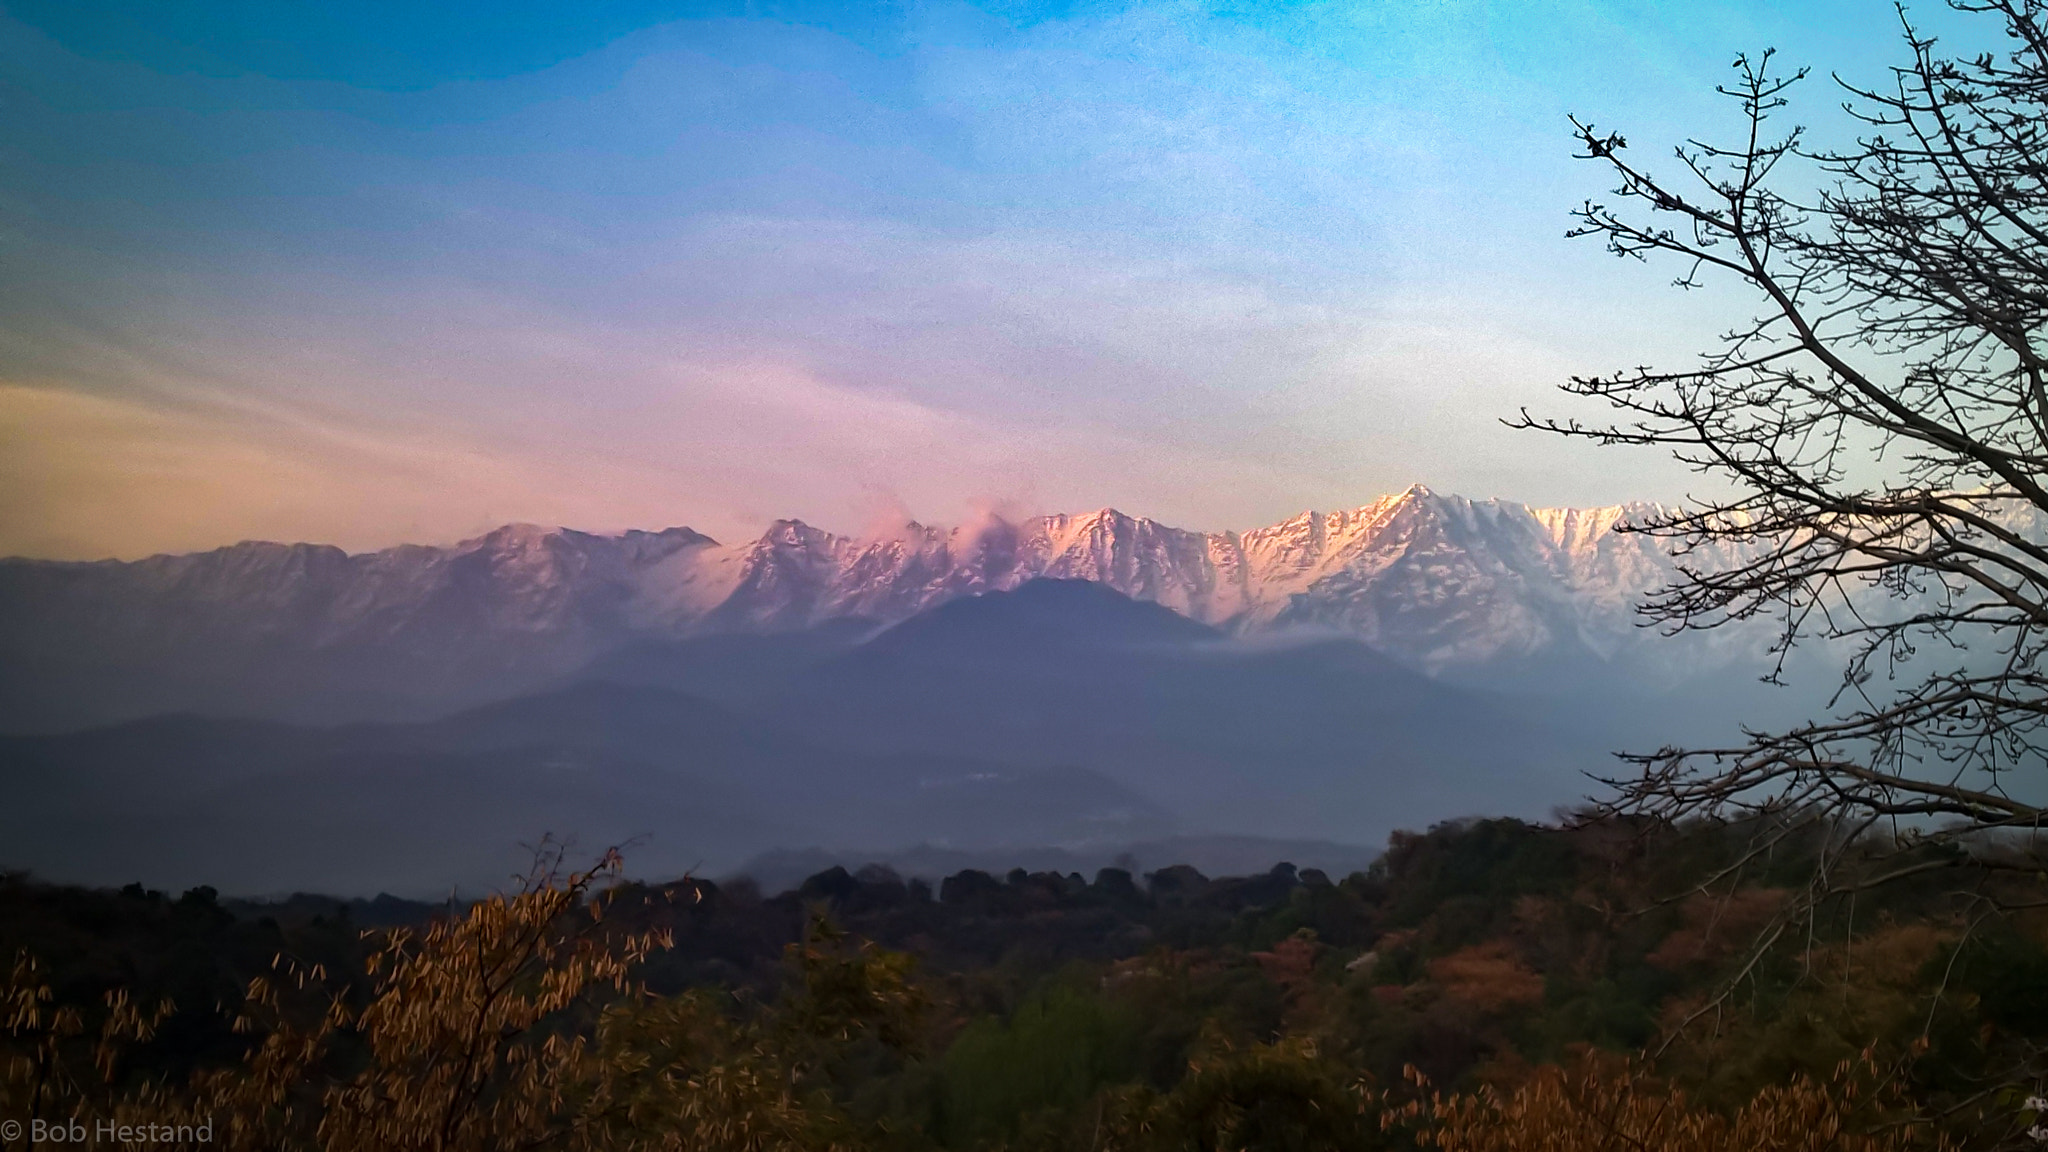 Nokia Lumia 929 sample photo. Dhauladhar mountains photography